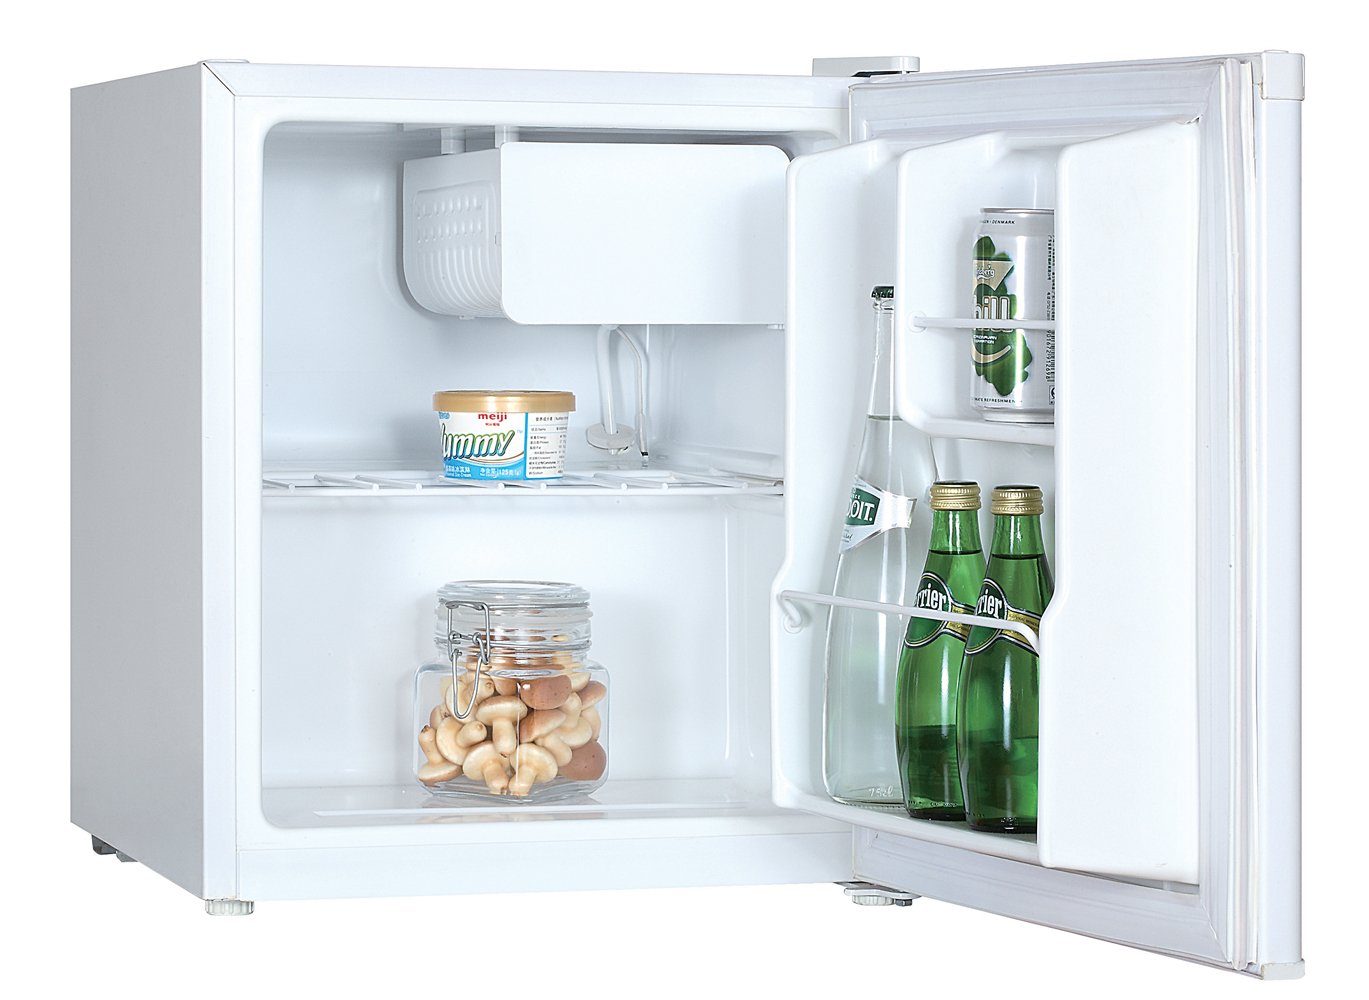 Купить холодильник в воронеже недорого. Холодильник Mystery MRF-8050w. Холодильник GOLDSTAR RFG-50. Холодильник GOLDSTAR RFG-55. Холодильник MPM 46-CJ-01.